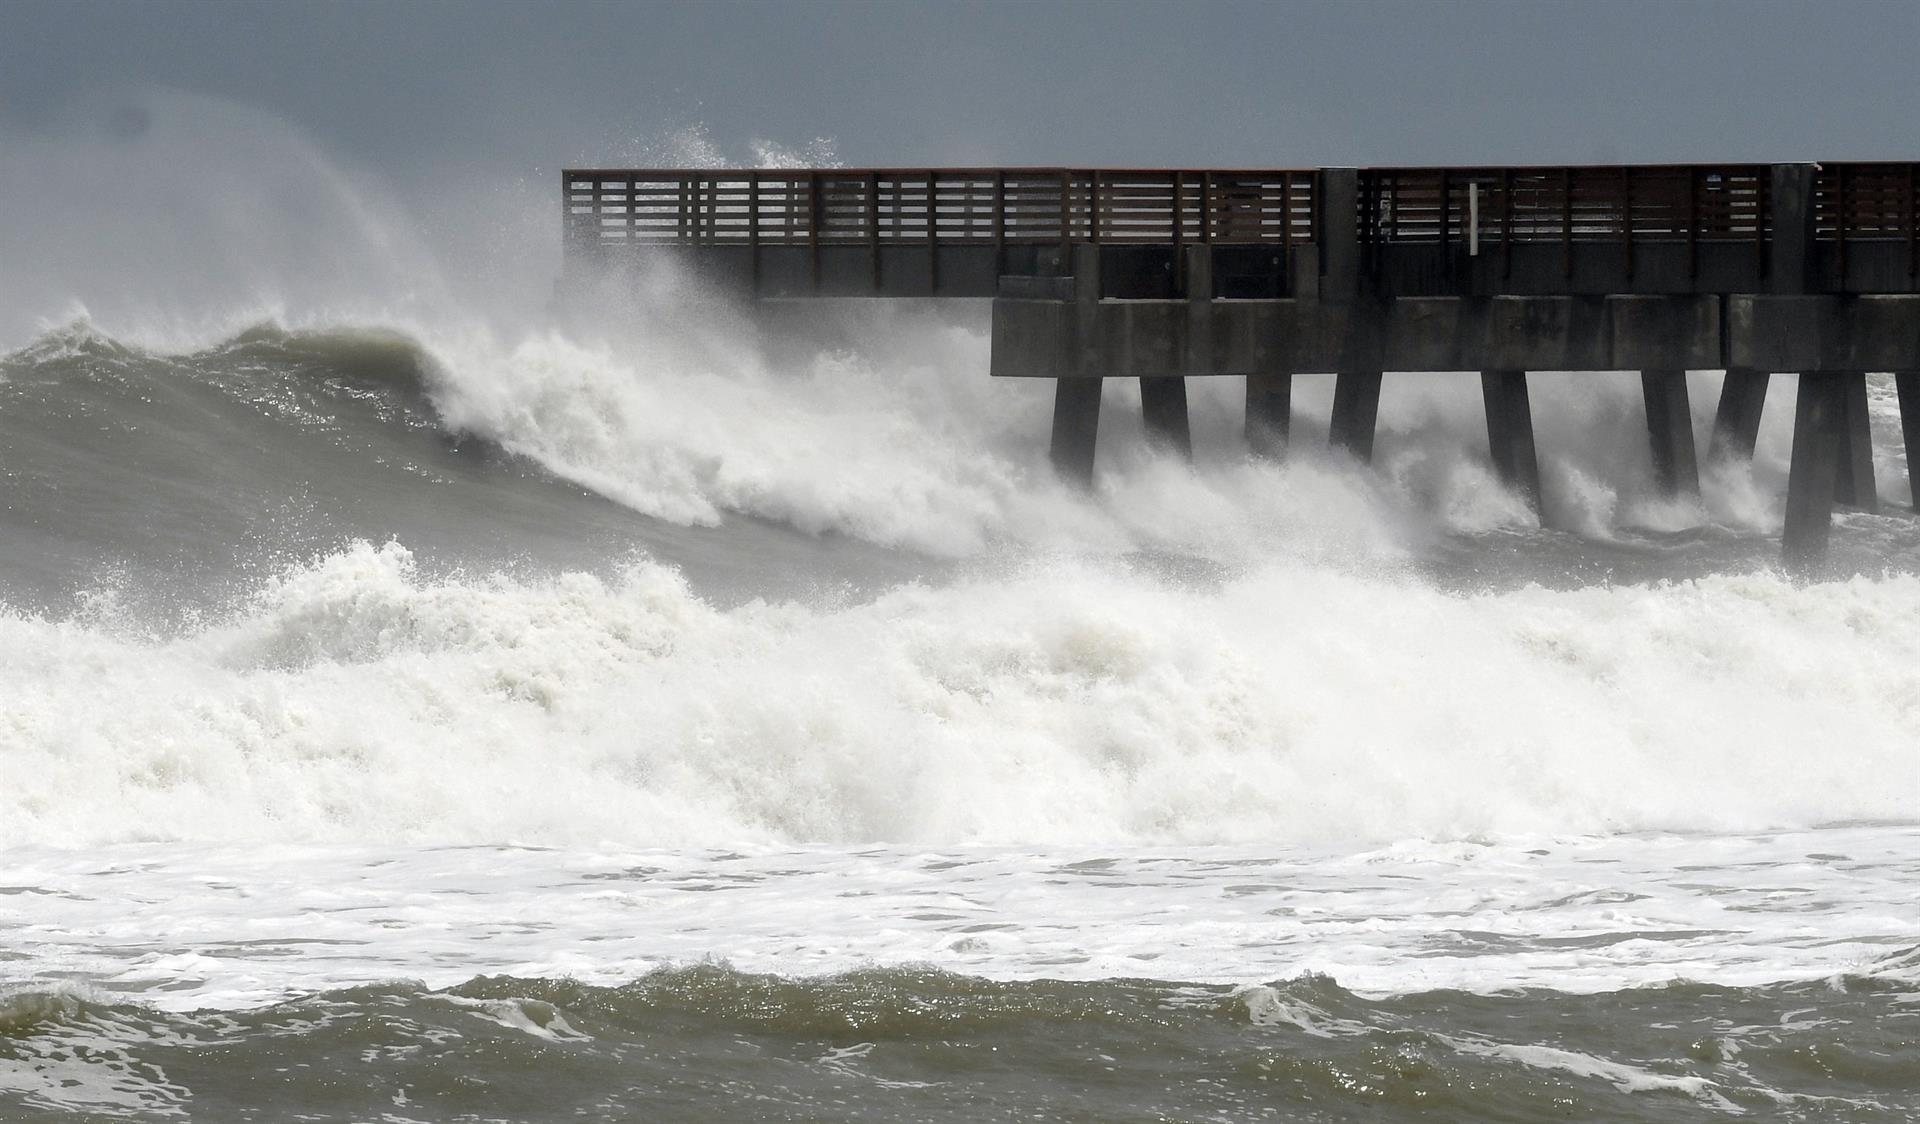 El muelle del paseo marítimo de Juno Beach, Florida (Estados Unidos), es golpeado por fuertes olas. Imagen de archivo. EFE/ Jim Rassol
